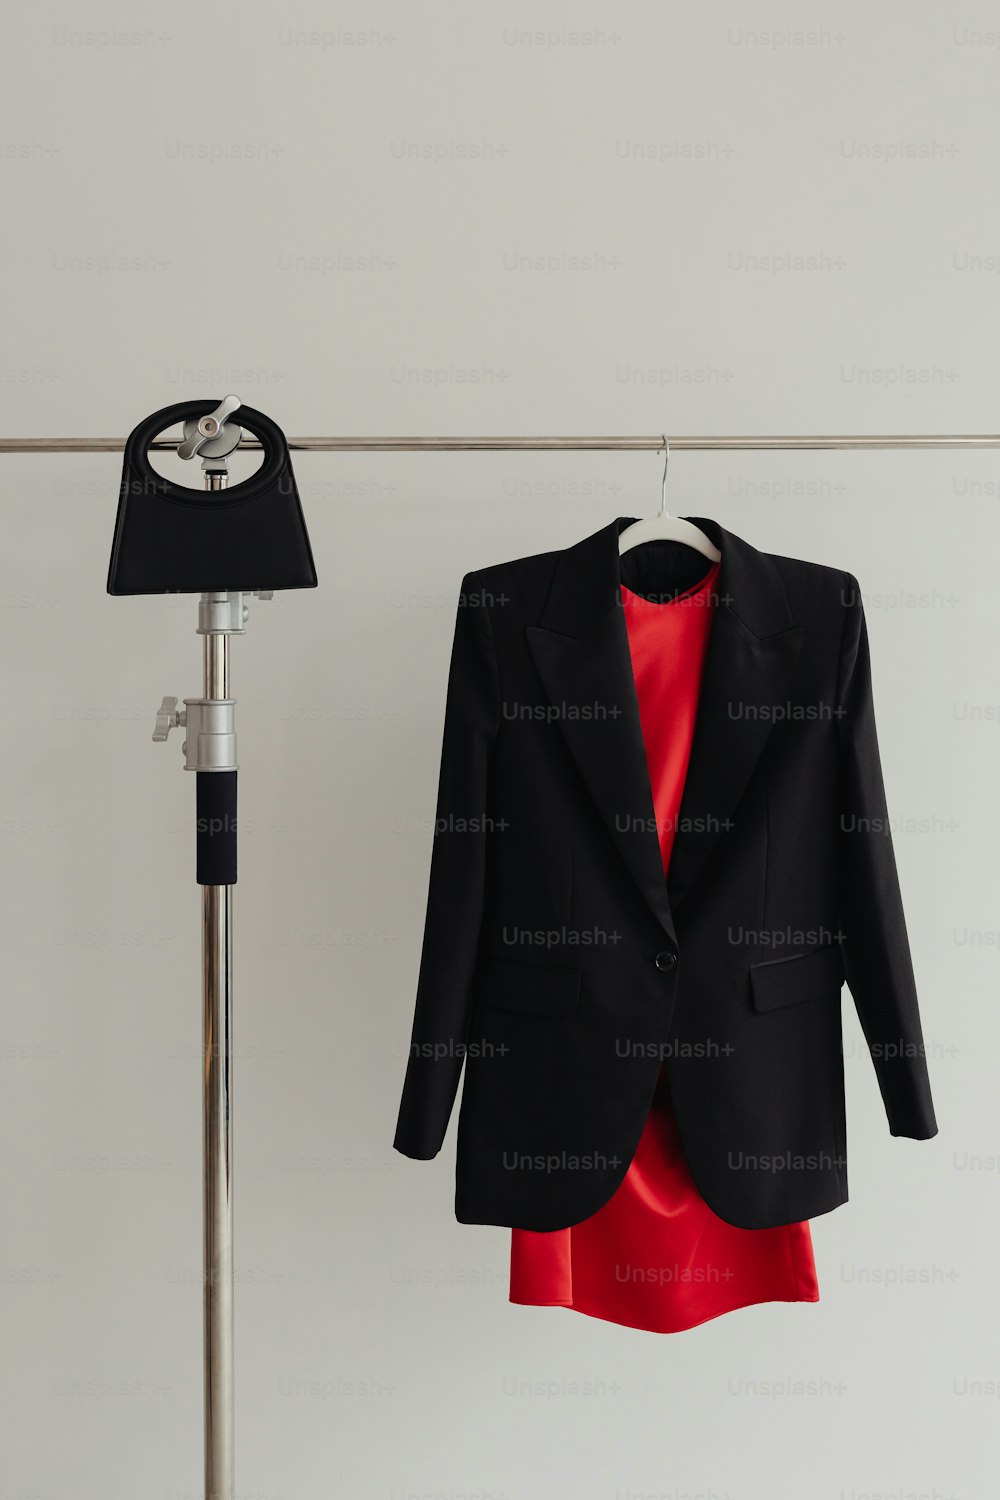 une veste noire accrochée à une corde à linge à côté d’une robe rouge